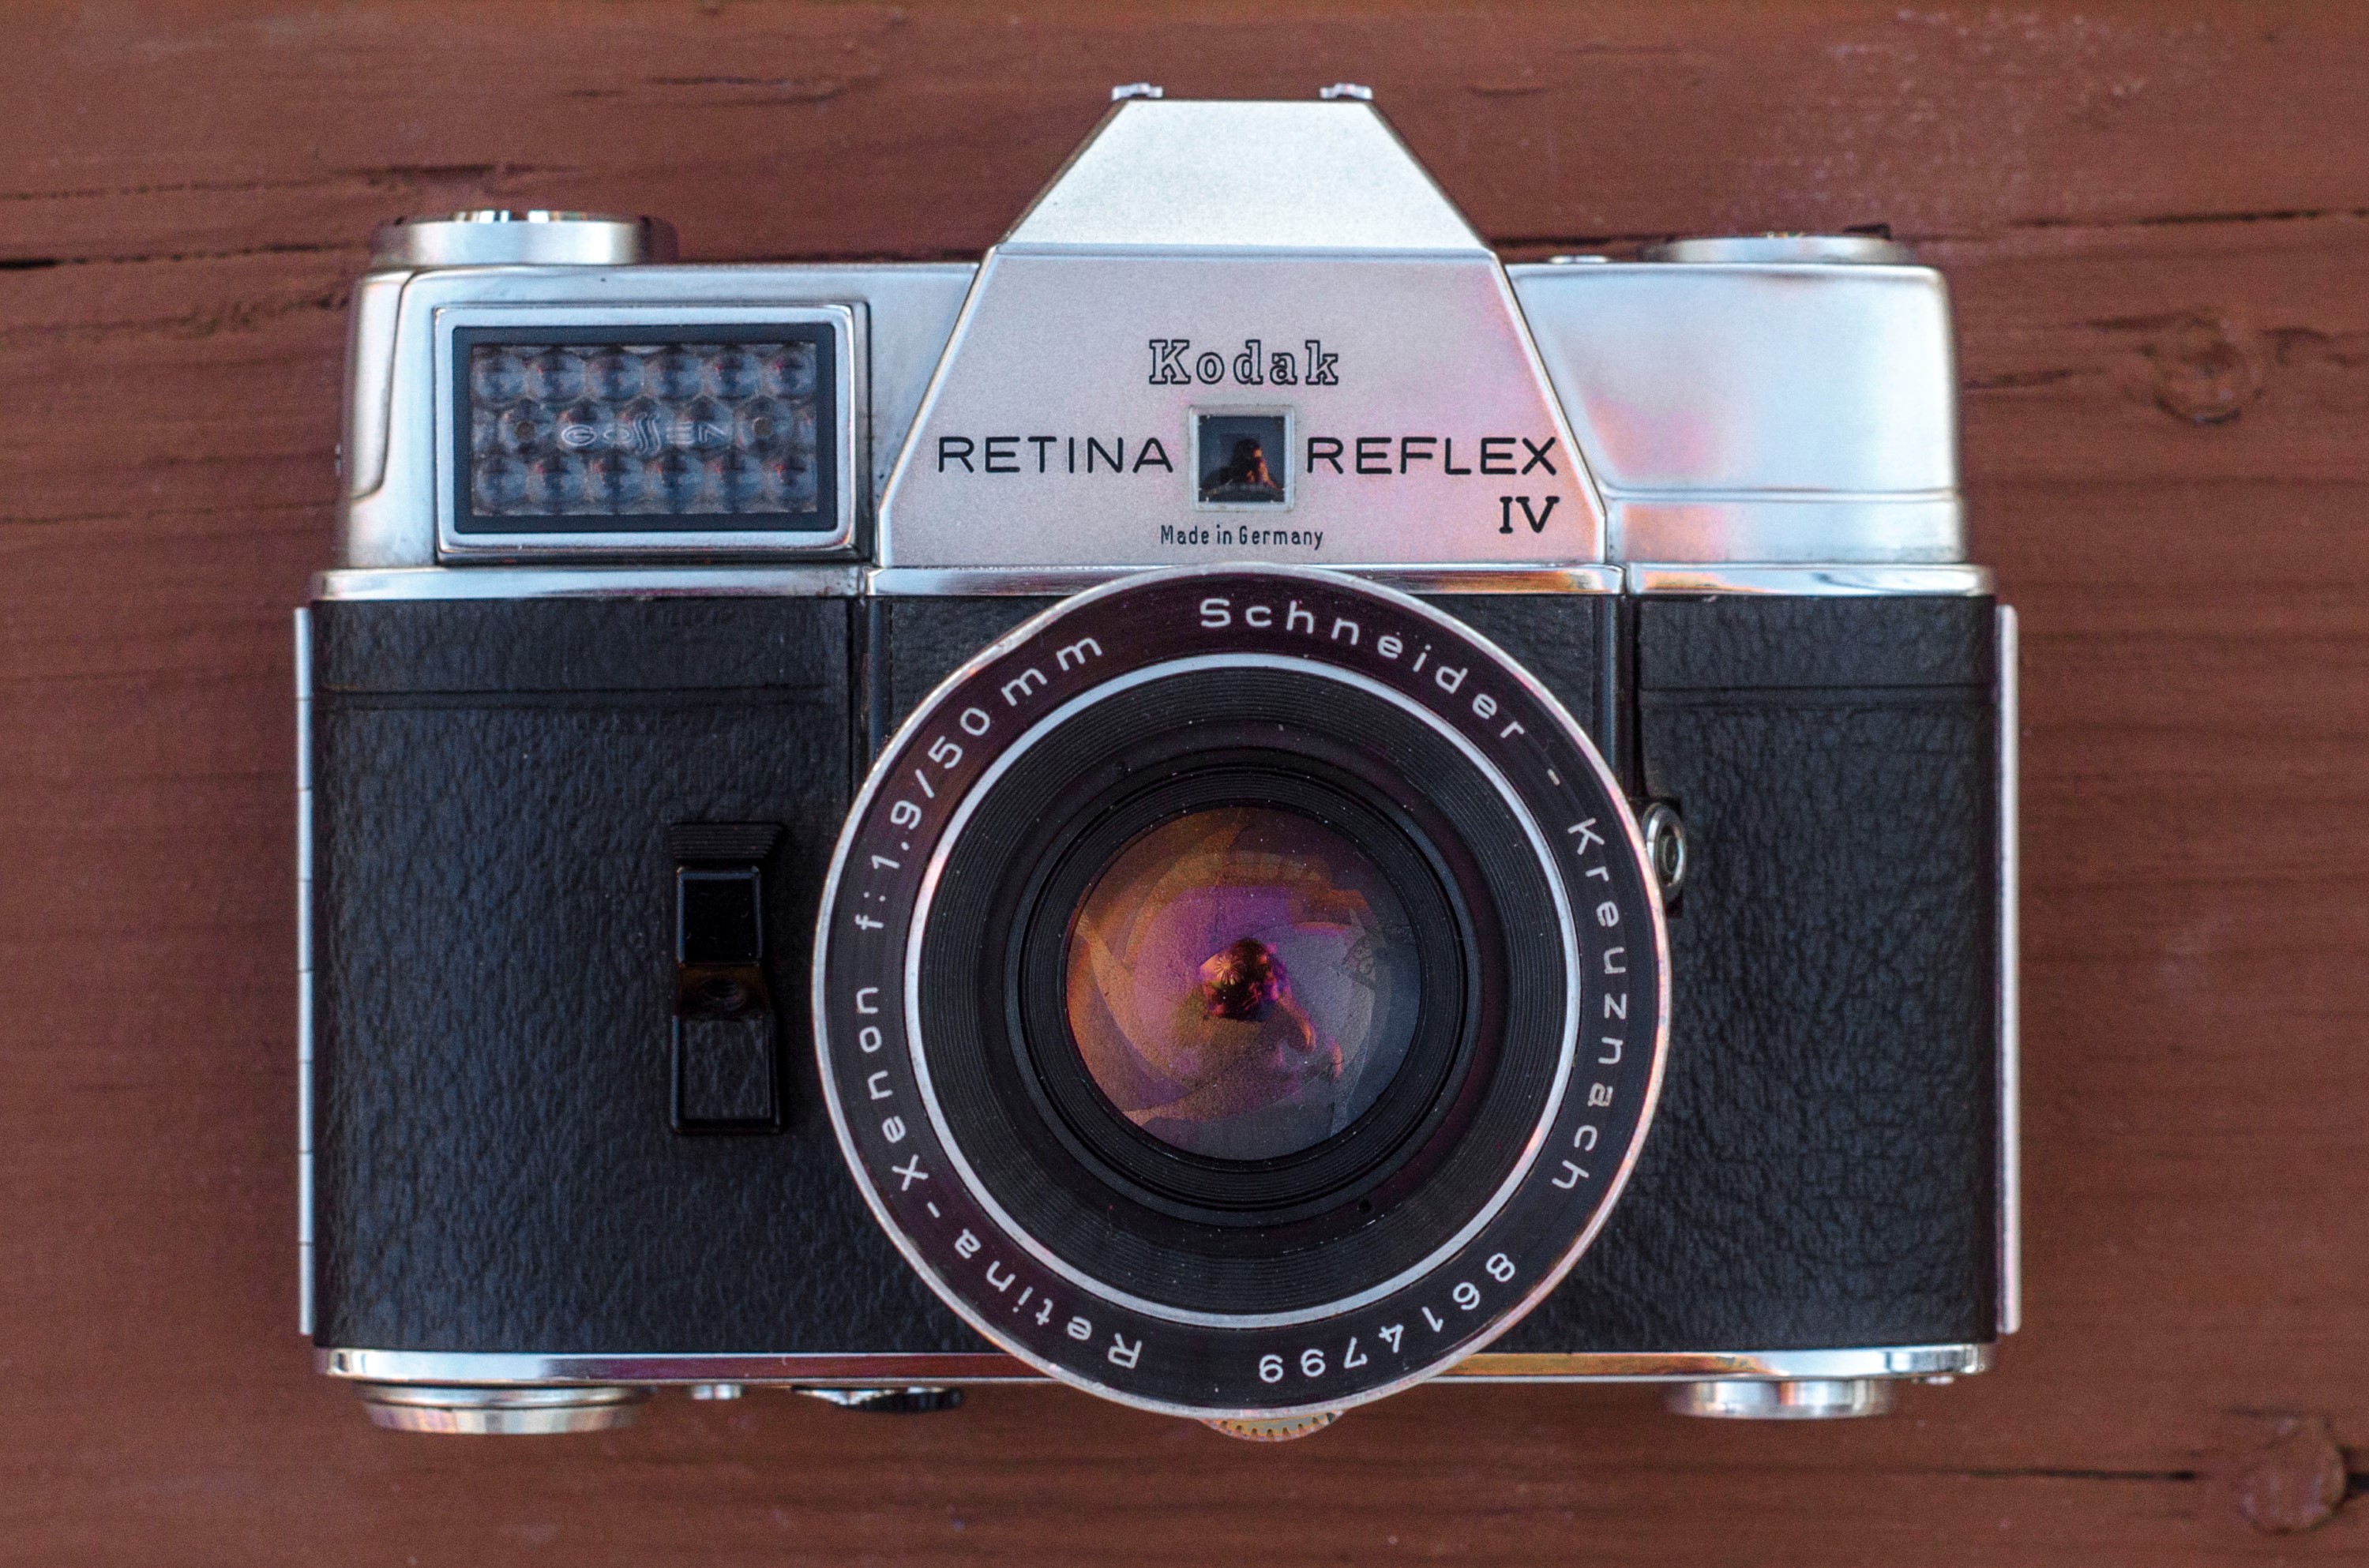 Kodak Kodak Retina Reflex IV 051 Retina Xenar 2.8 50 mm numéro 51330 1964-1966 